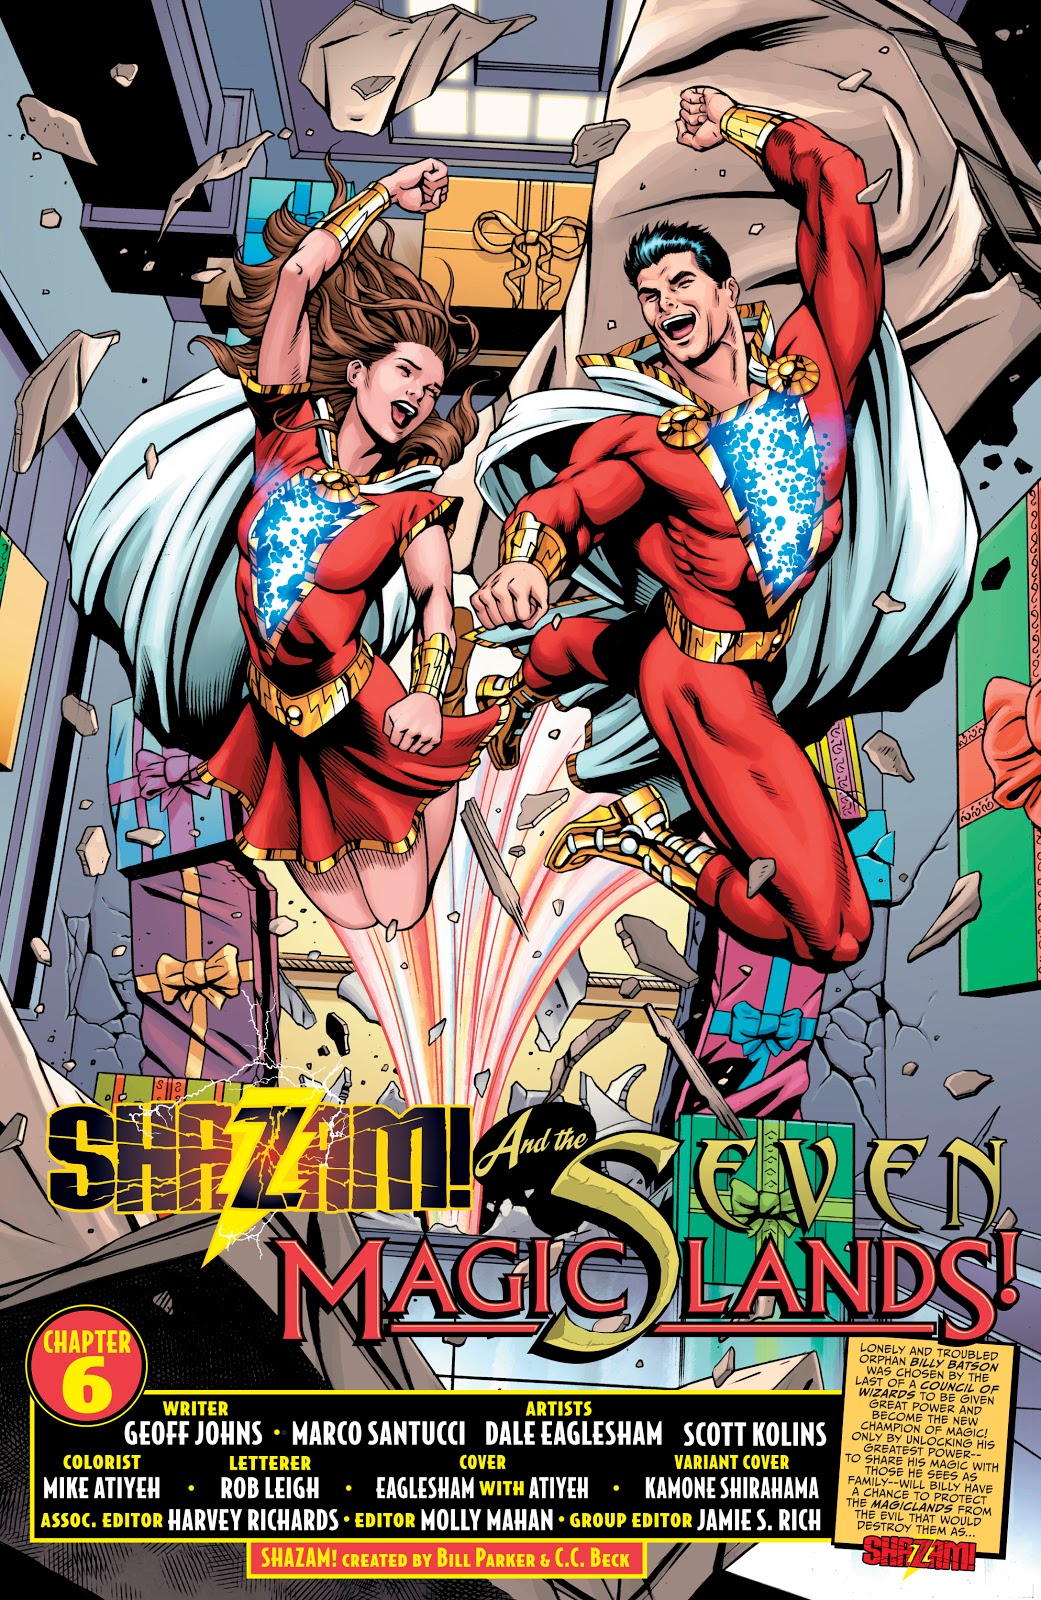 Shazam And Lady Shazam (Shazam Vol. 3 #6)